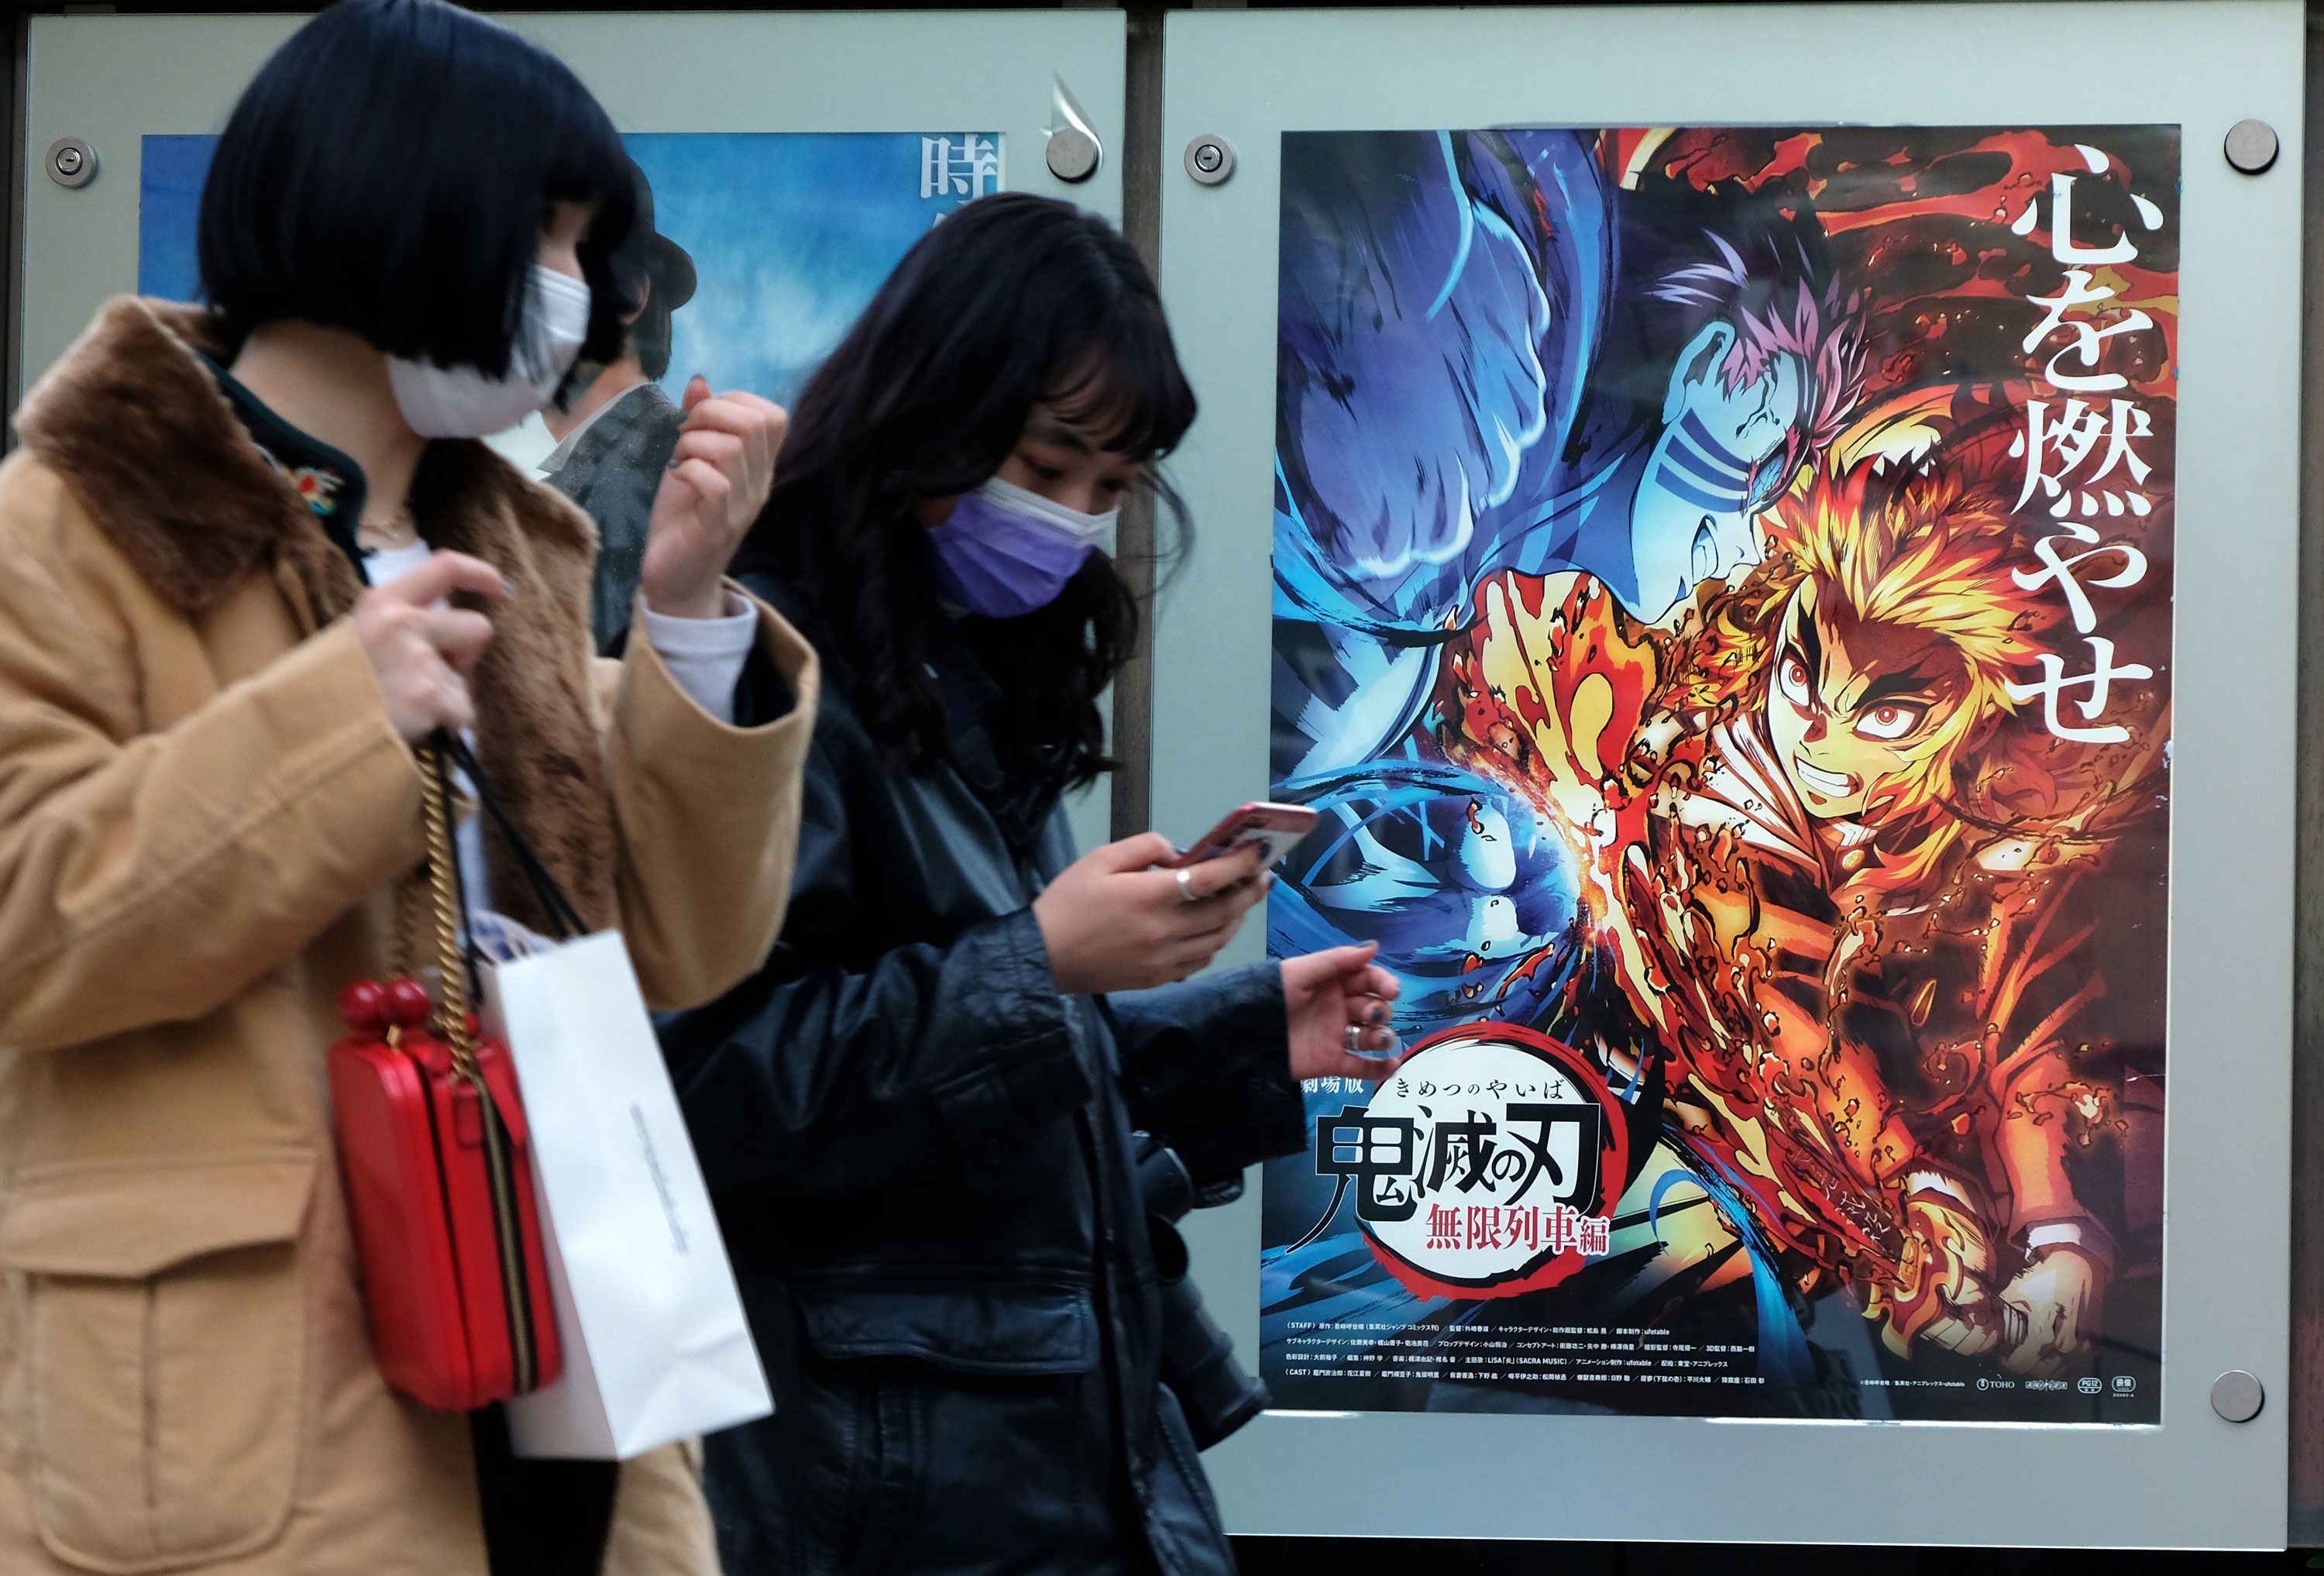 Film Review: Demon Slayer: Kimetsu no Yaiba the Movie: Mugen Train (2020)  by Haruo Sotozaki